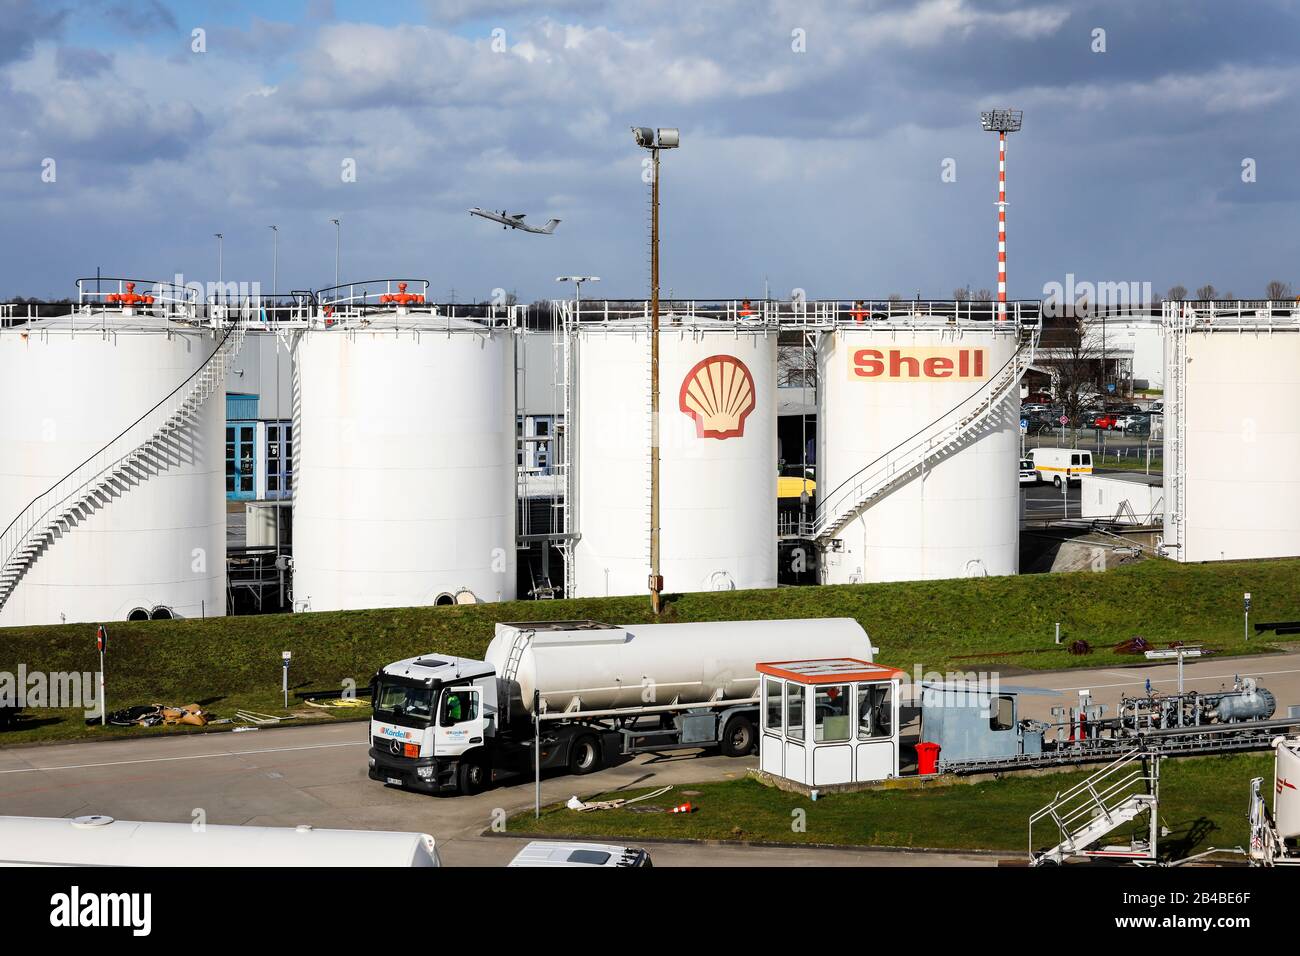 Duesseldorf, North Rhine-Westphalia, Germany - Shell, aviation fuel storage tanks at Duesseldorf airport. Duesseldorf, Nordrhein-Westfalen, Deutschlan Stock Photo